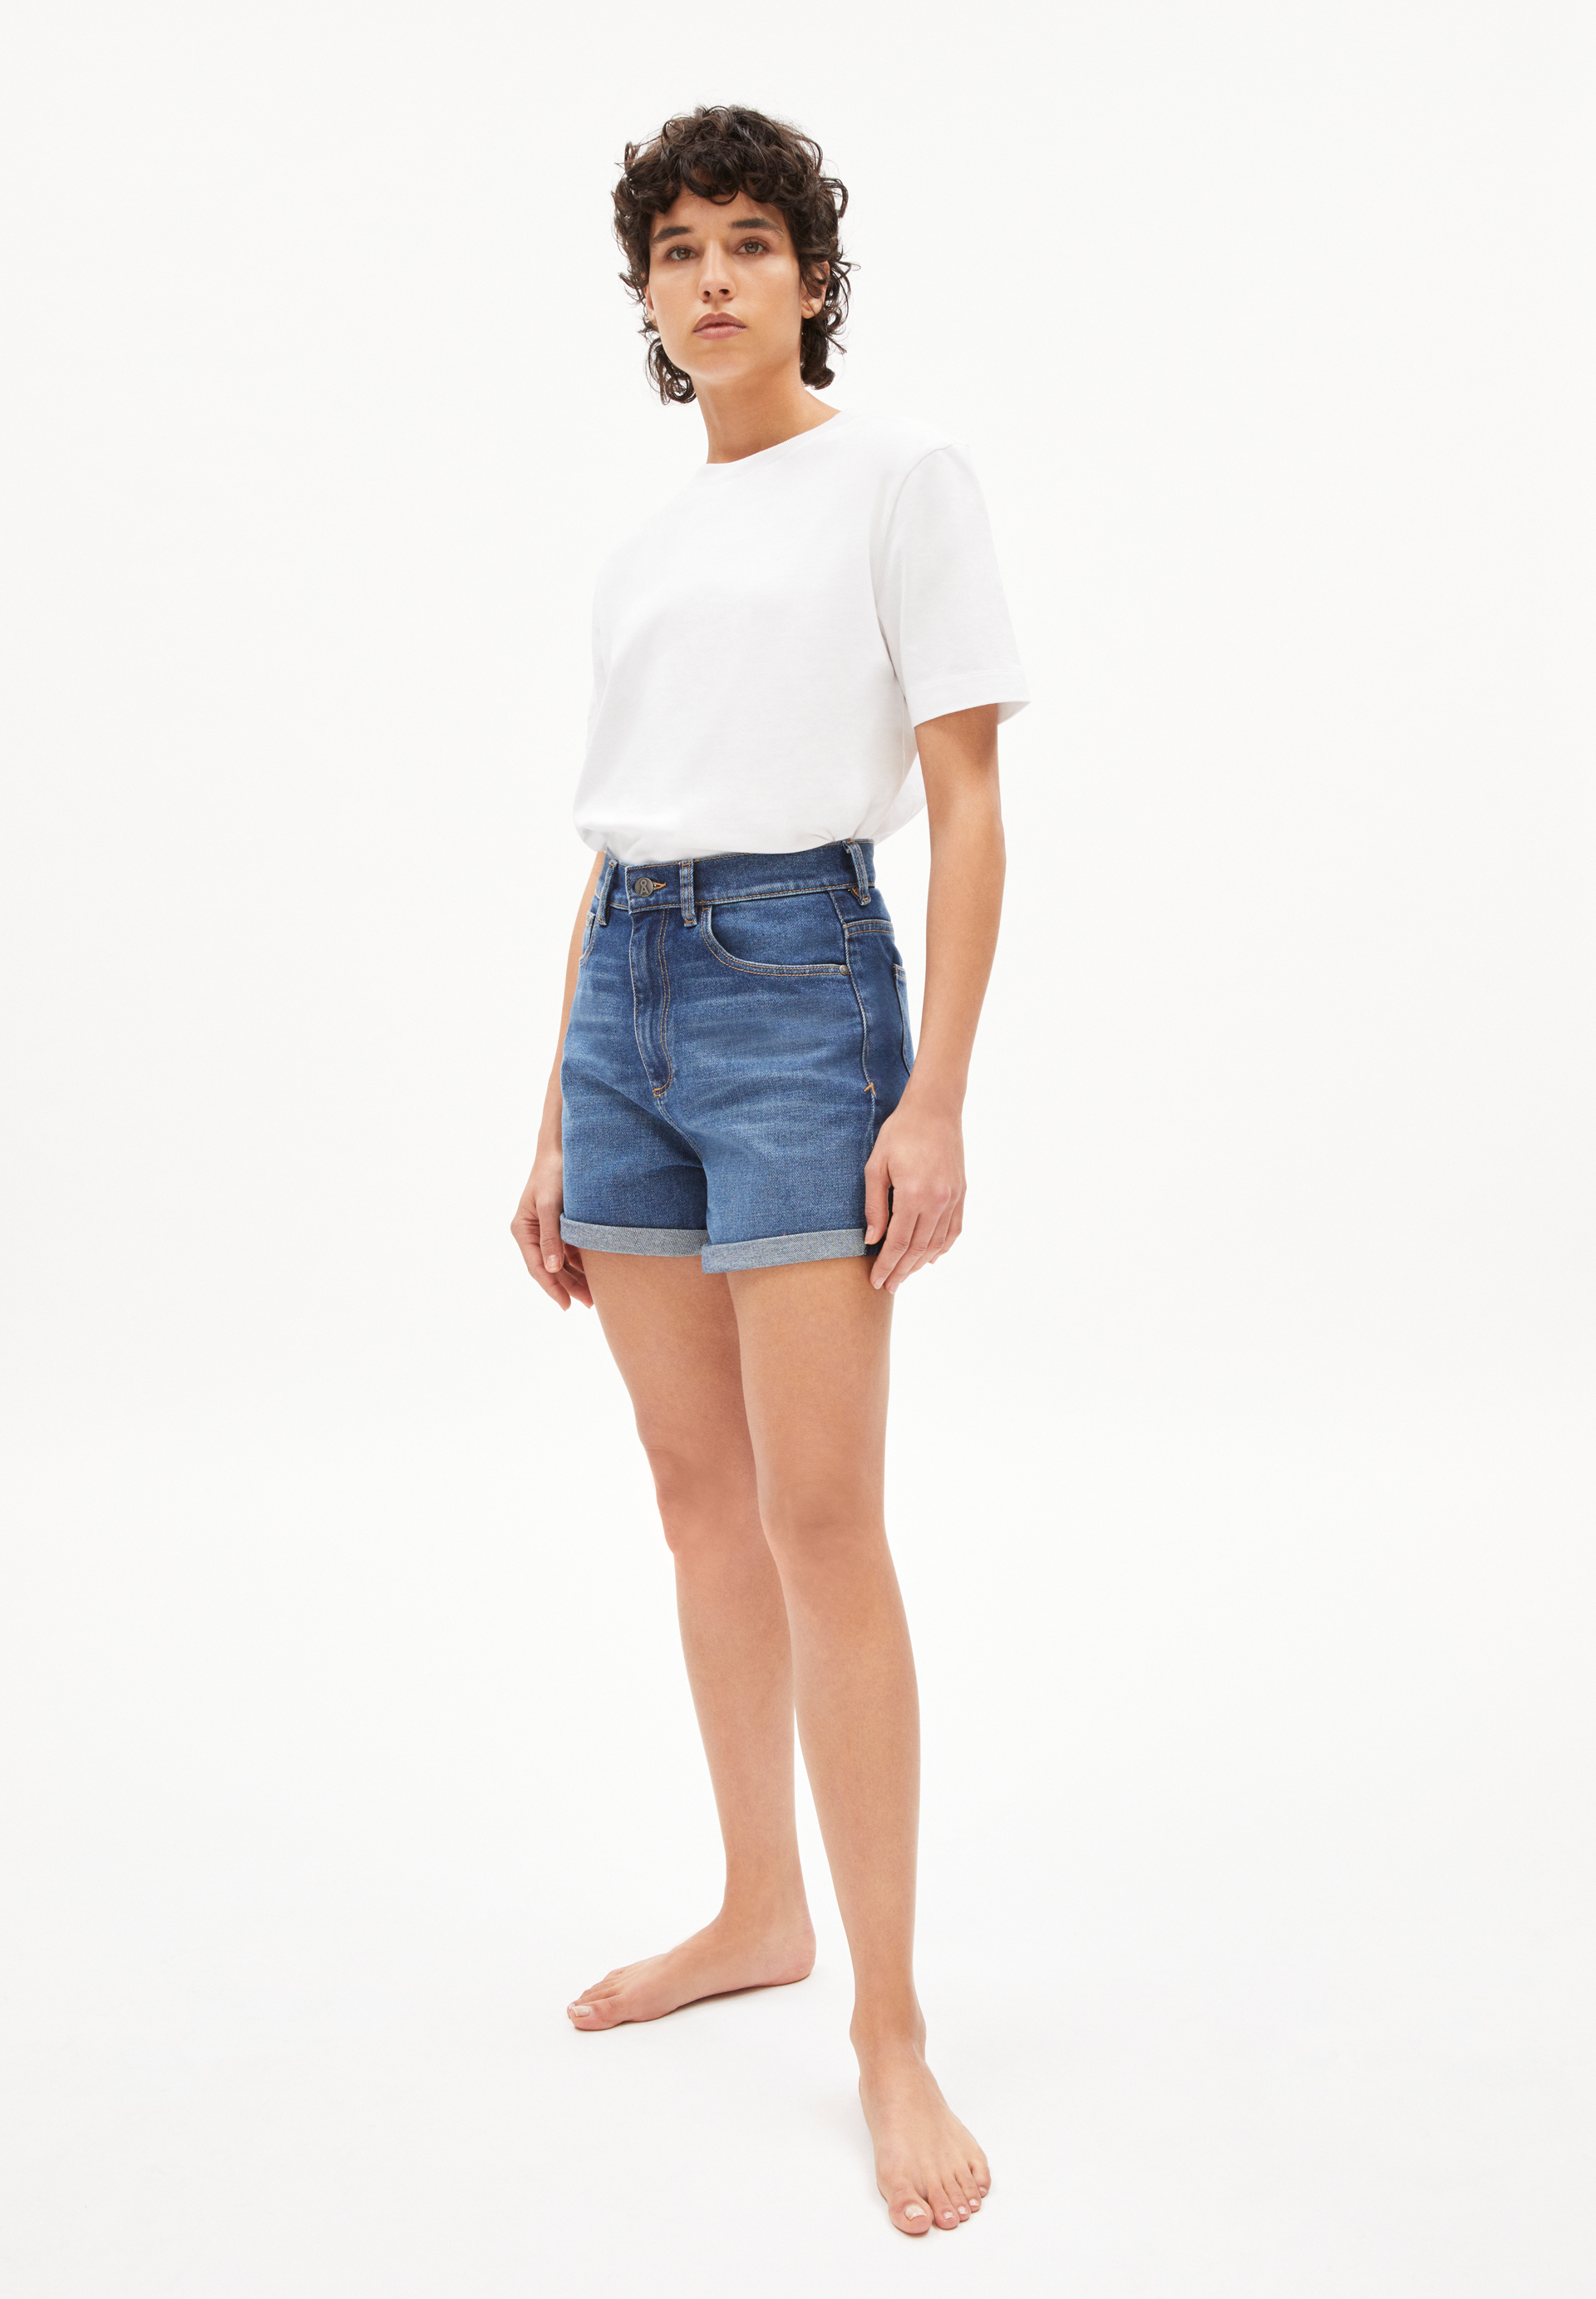 SVIAA Denim Shorts made of Organic Cotton Mix